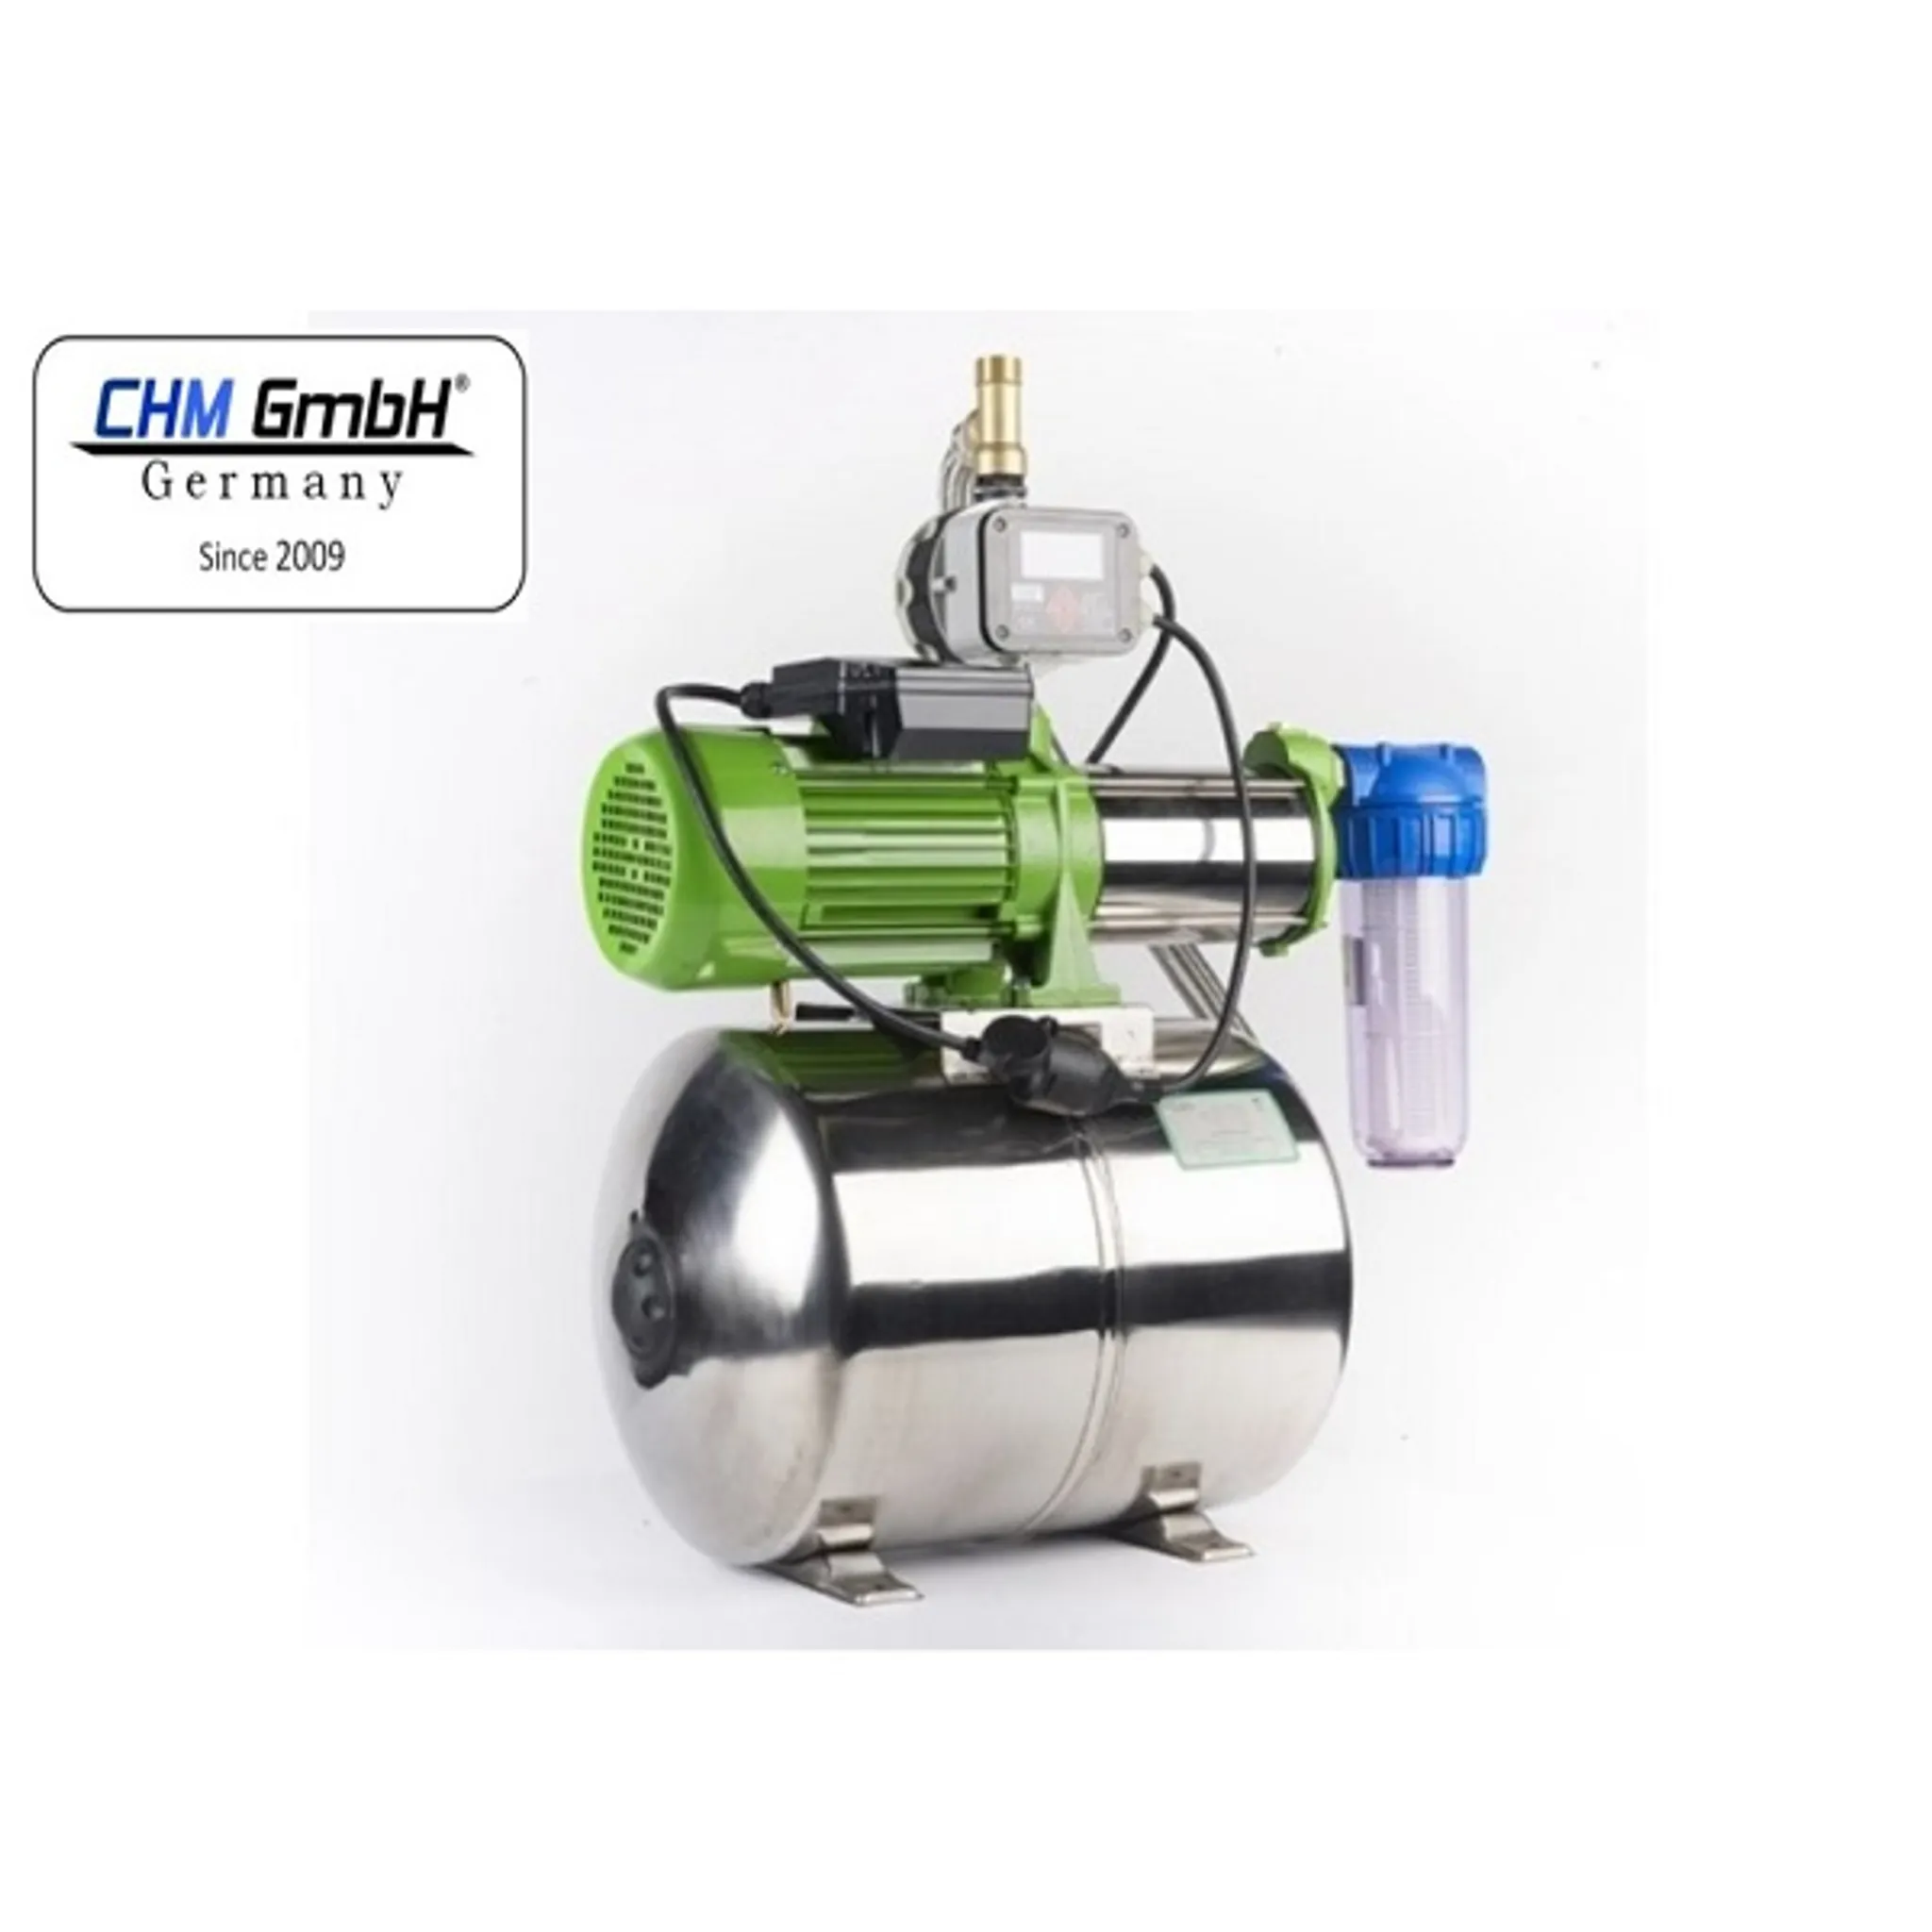 1100 CHM GmbH® Hauswasserwerk Liter, 50 Watt